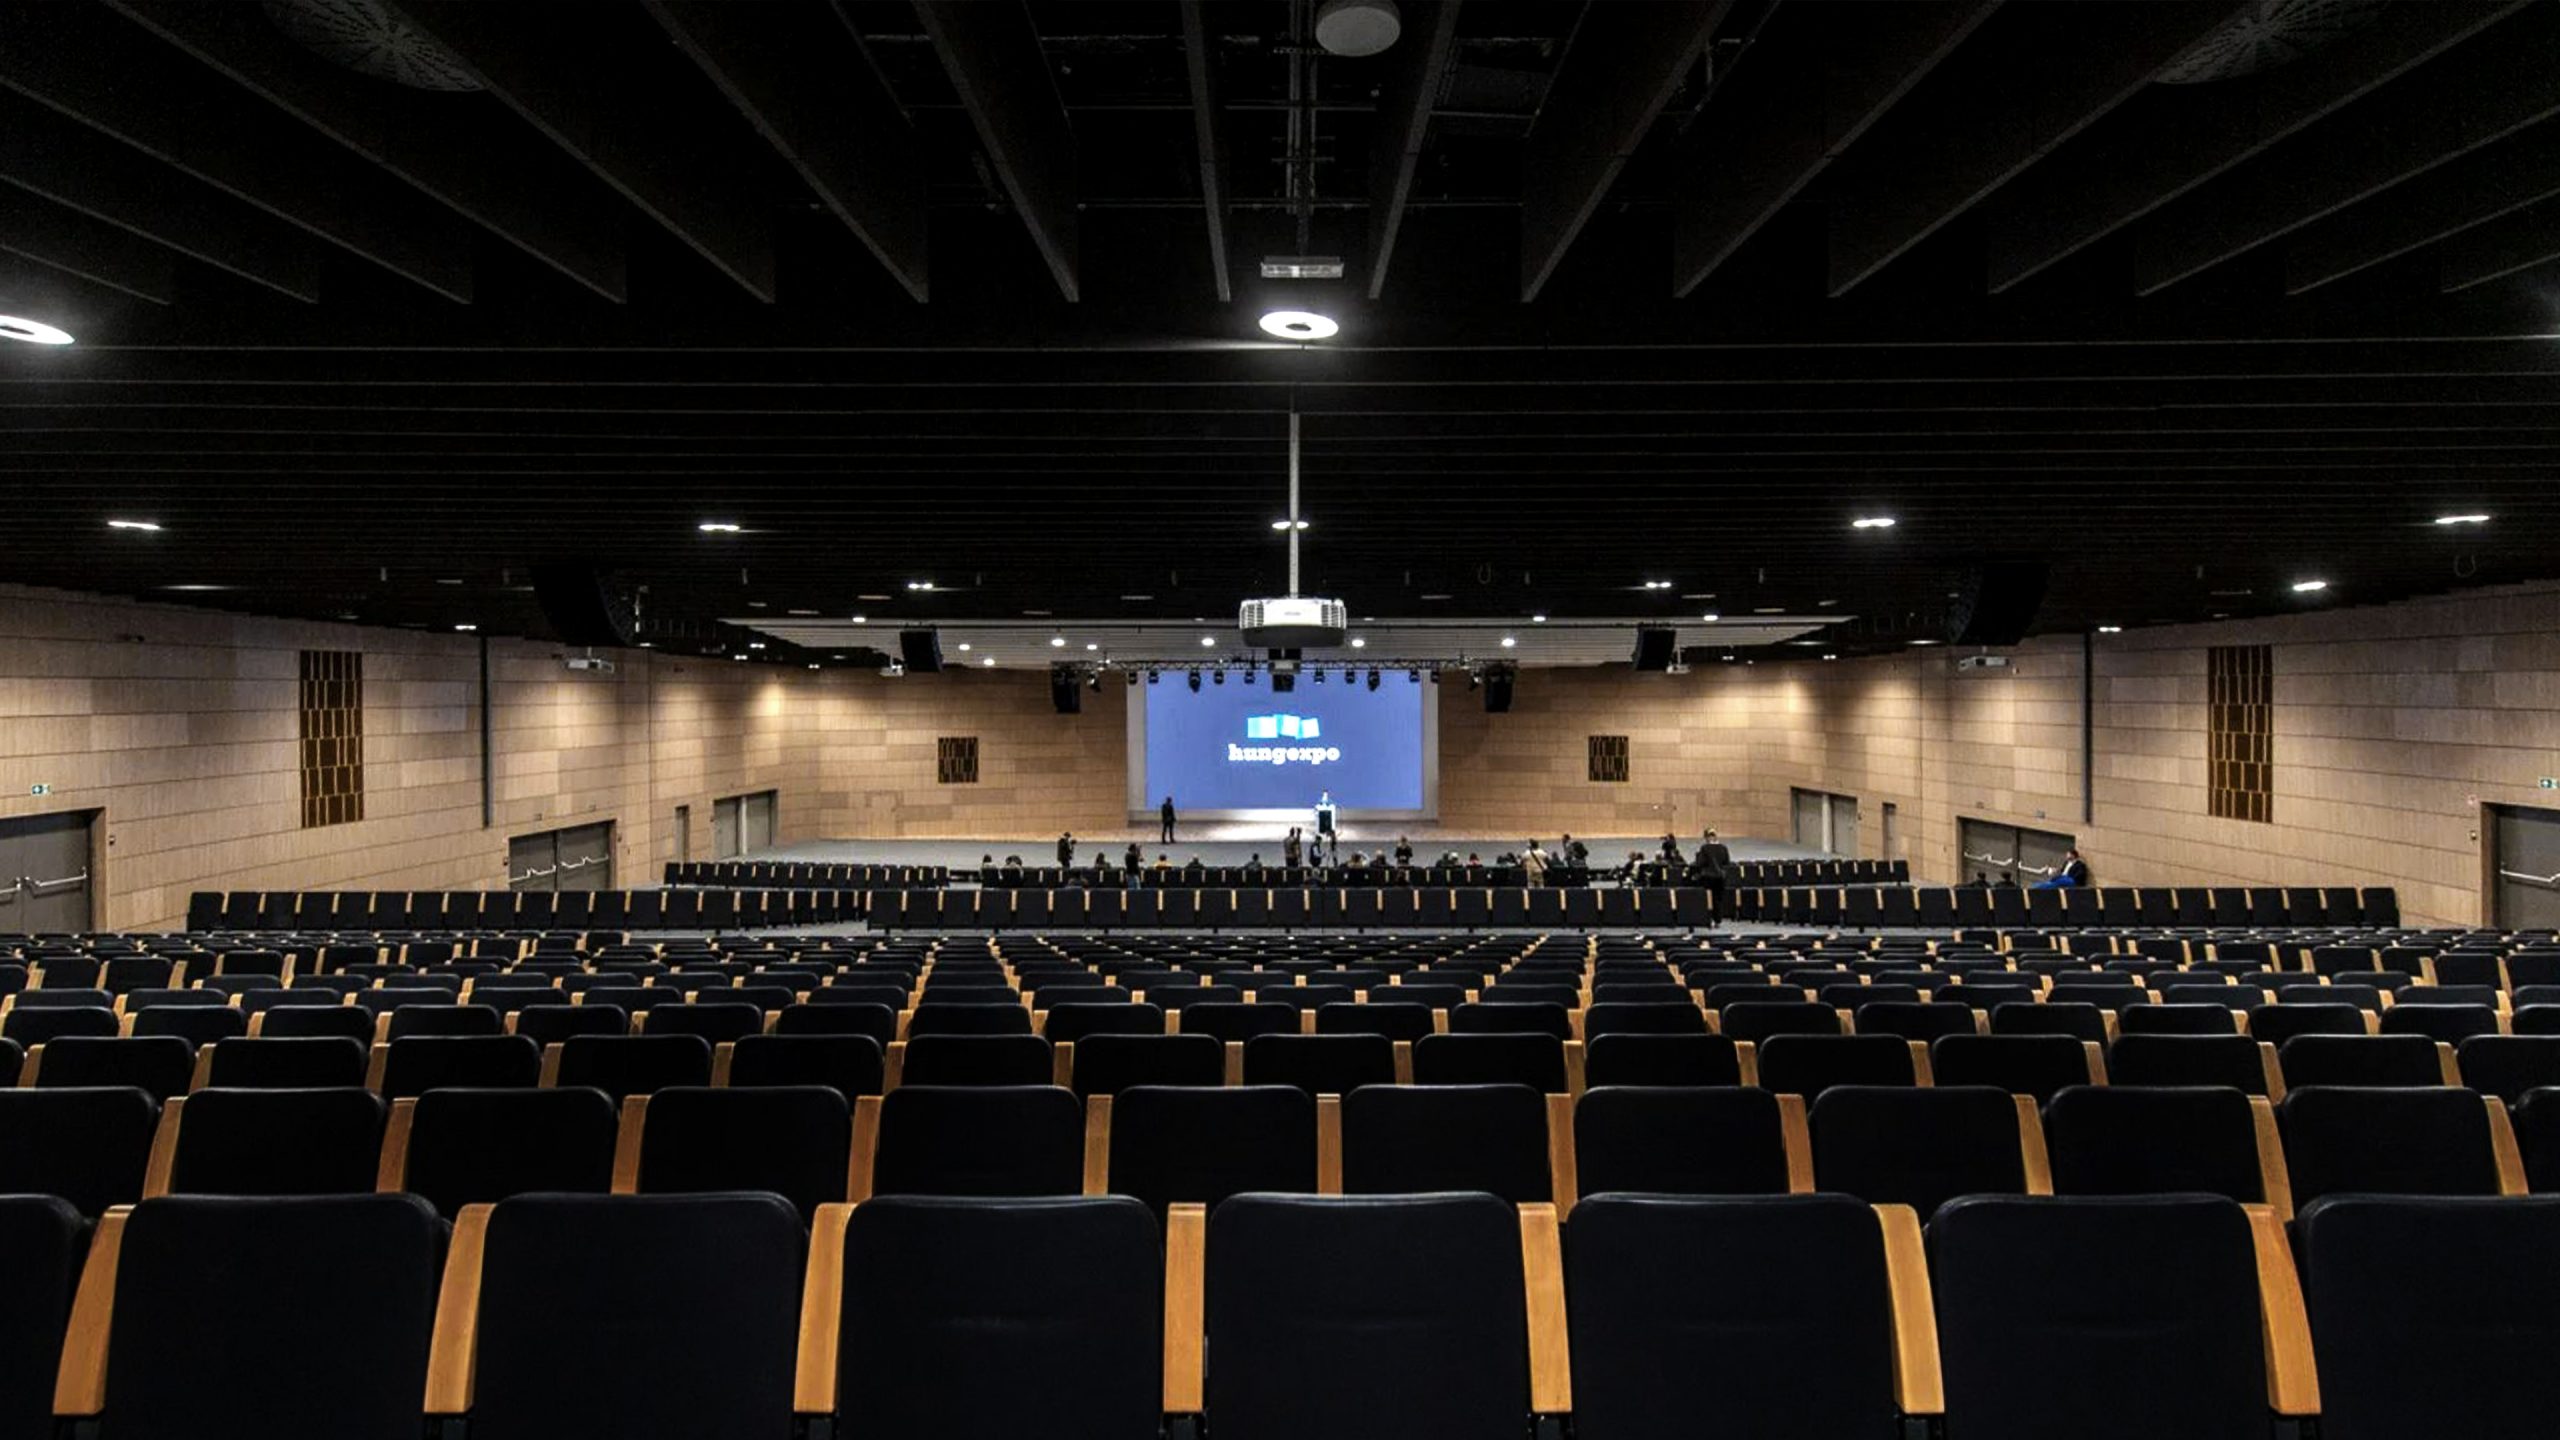 2000 fős plenáris terem. A terem Gala ülésrendszere könnyen és időhatékonyan átalakítható.